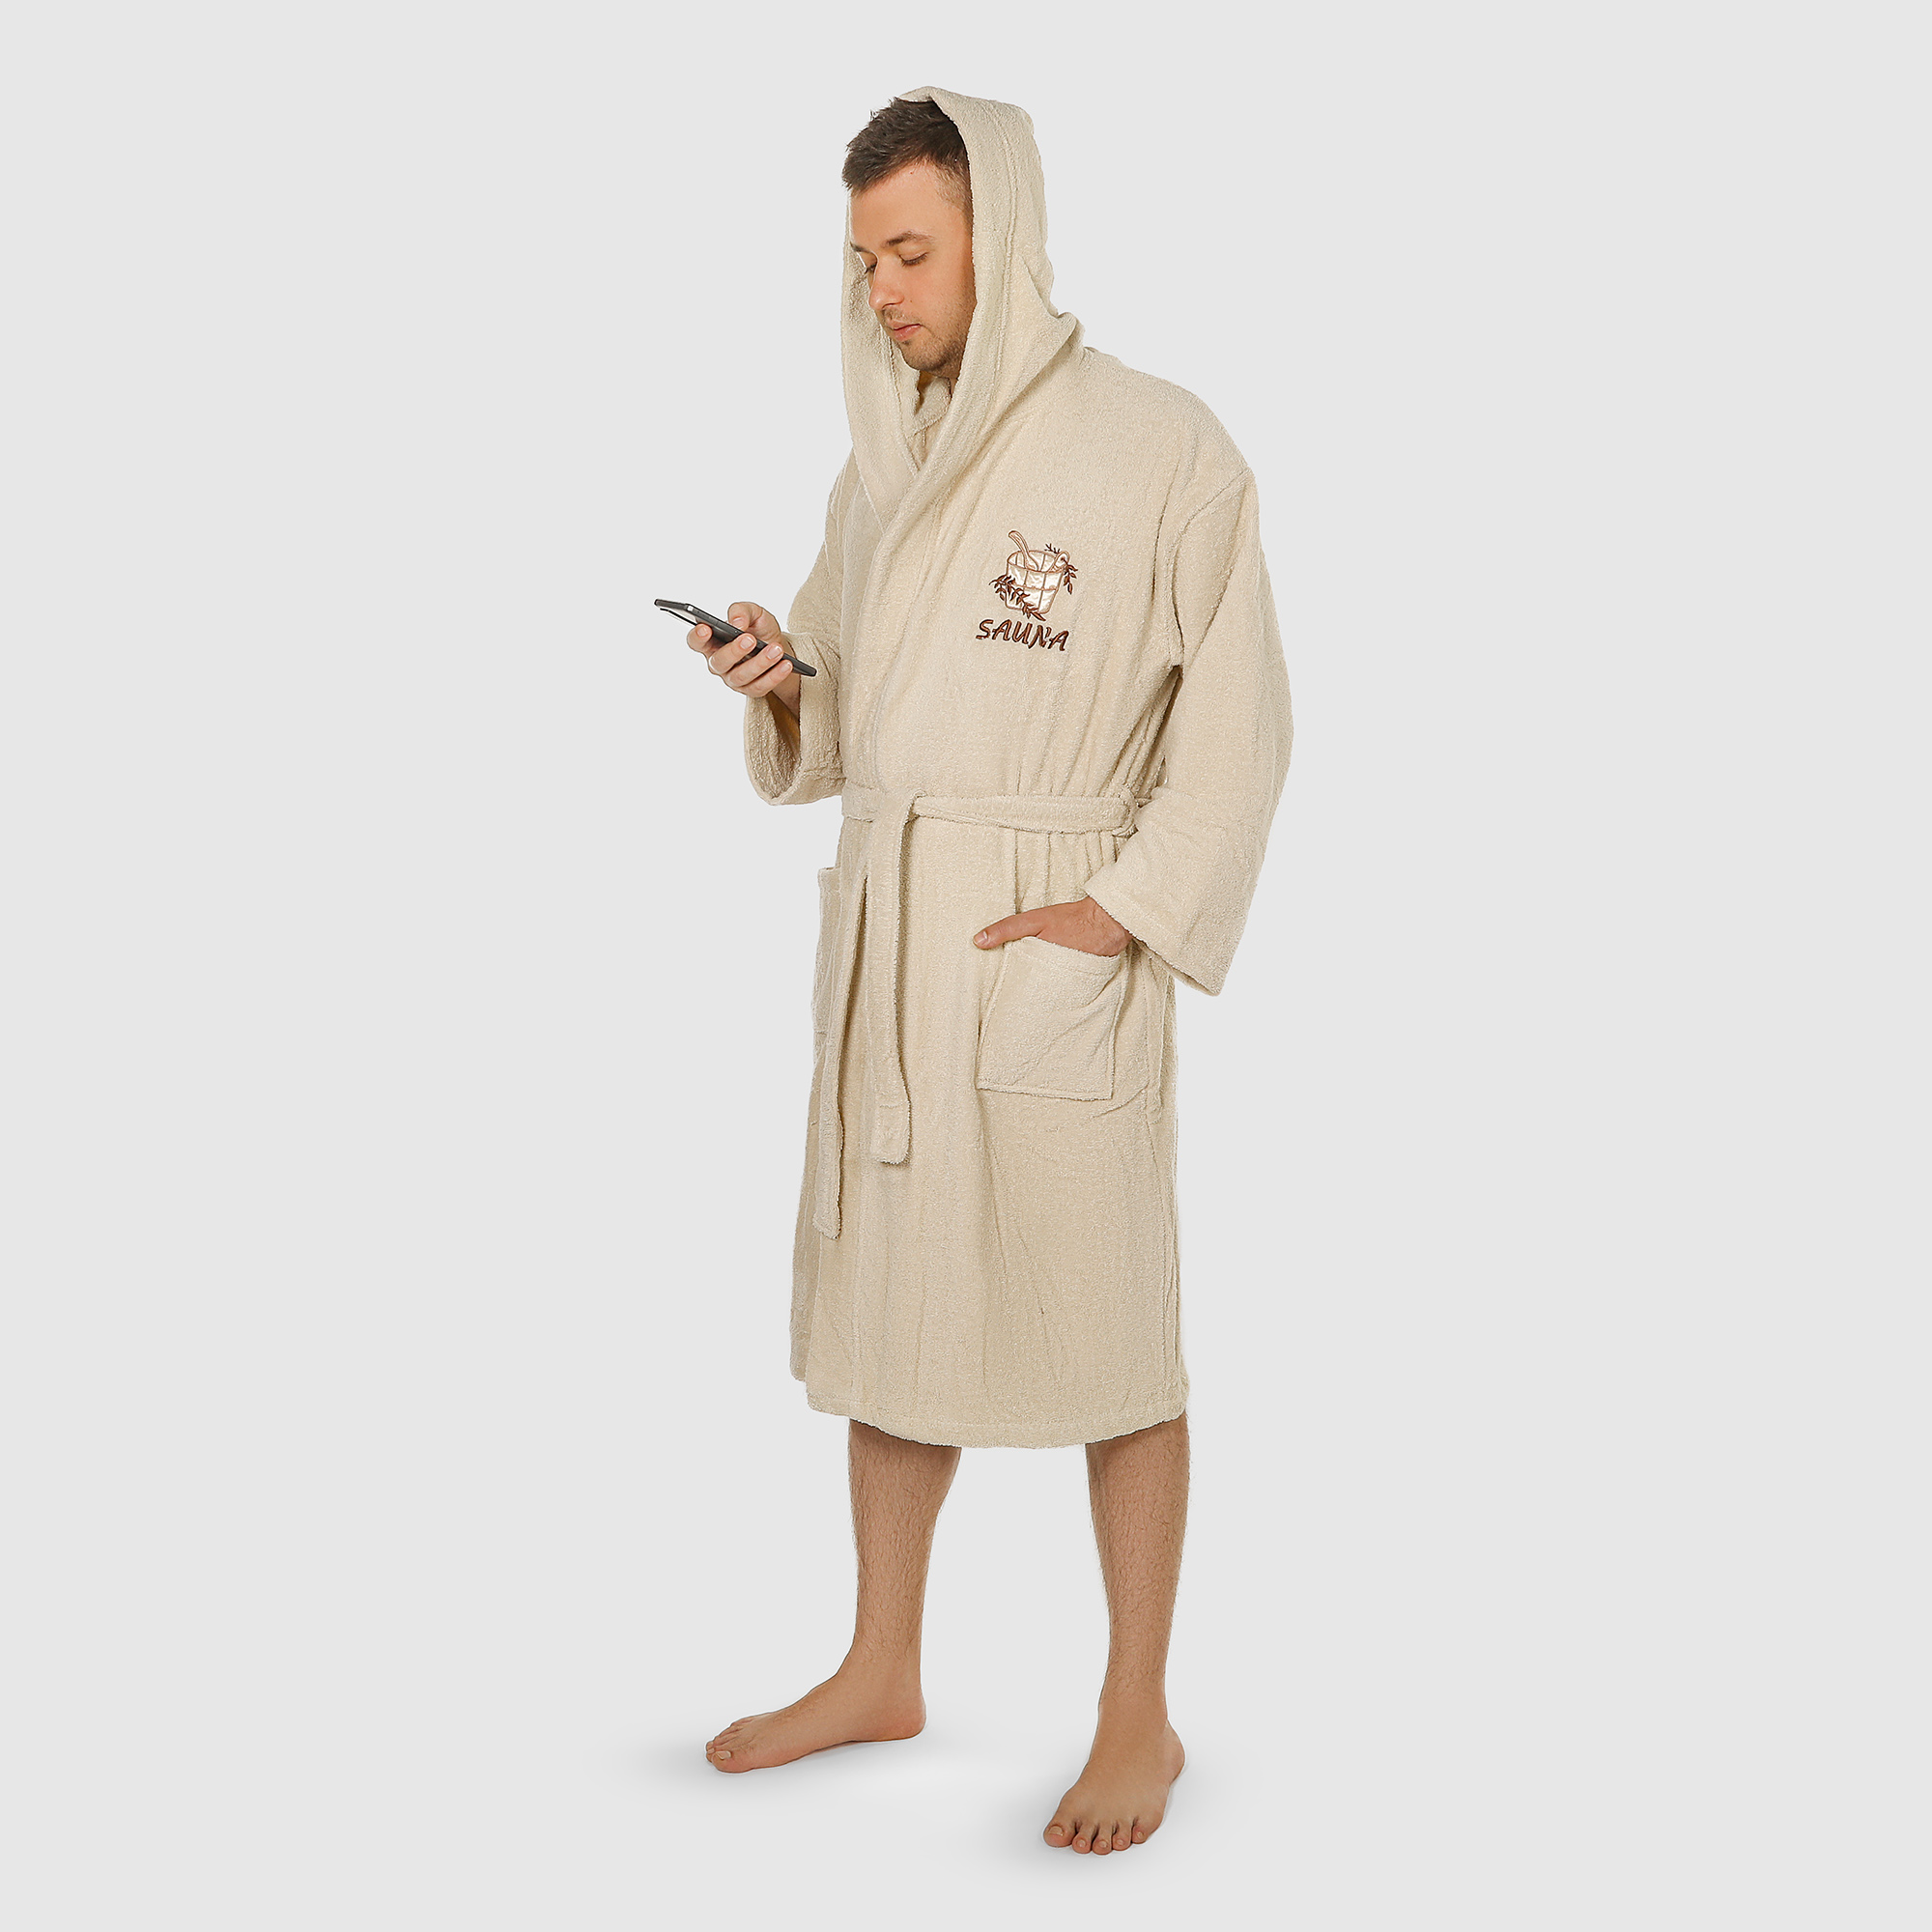 Халат мужской Asil Sauna brown XL махровый с капюшоном цена и фото